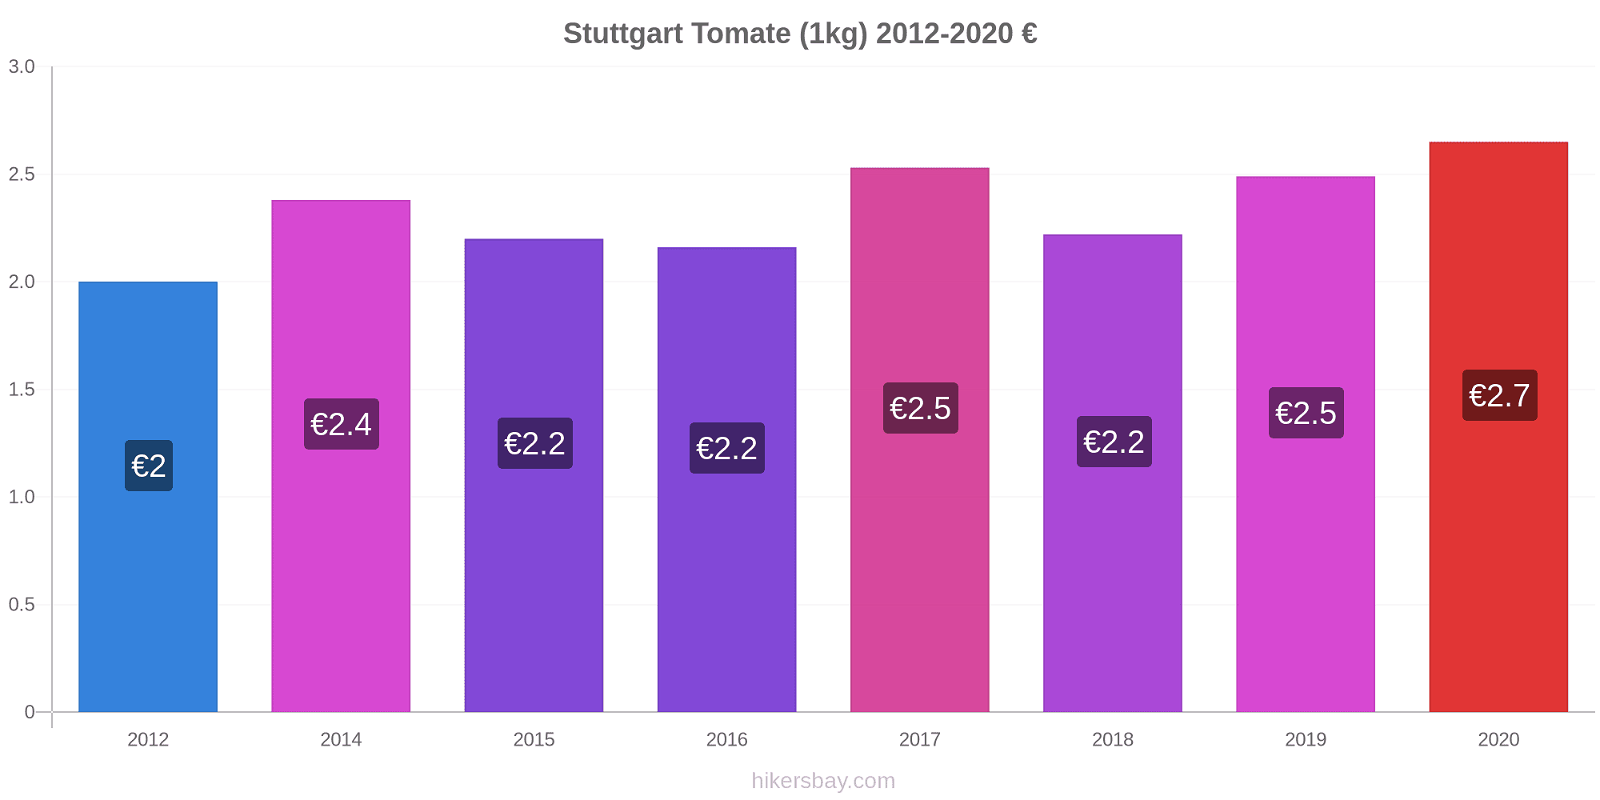 Stuttgart modificări de preț Tomate (1kg) hikersbay.com